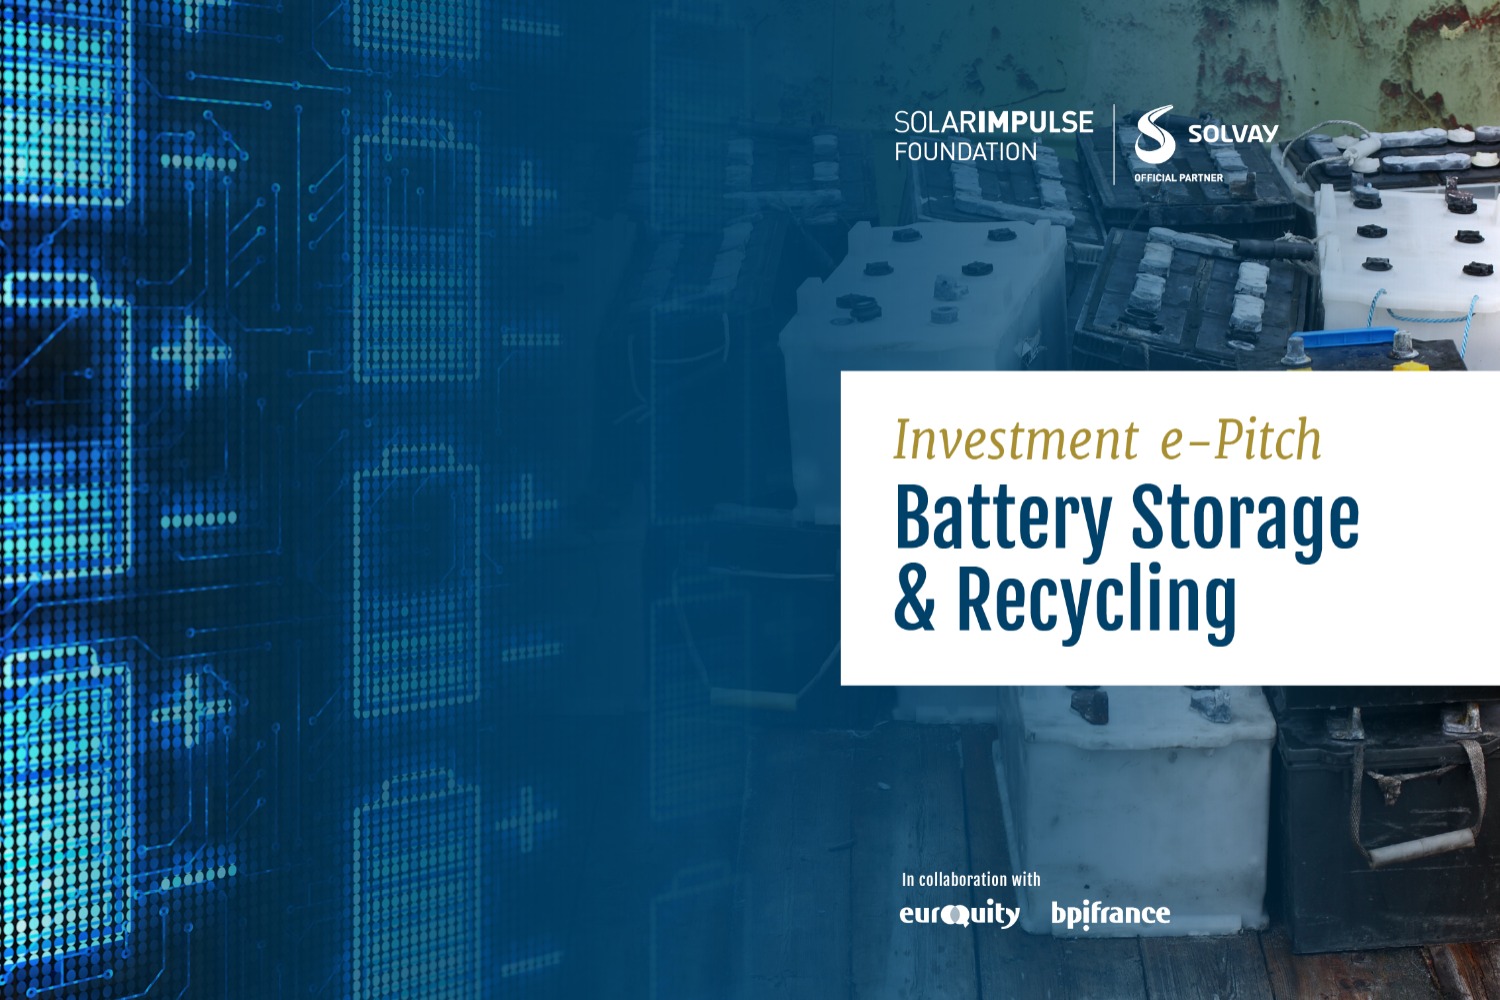 Armazenamento e reciclagem de baterias em parceria com a Solvay